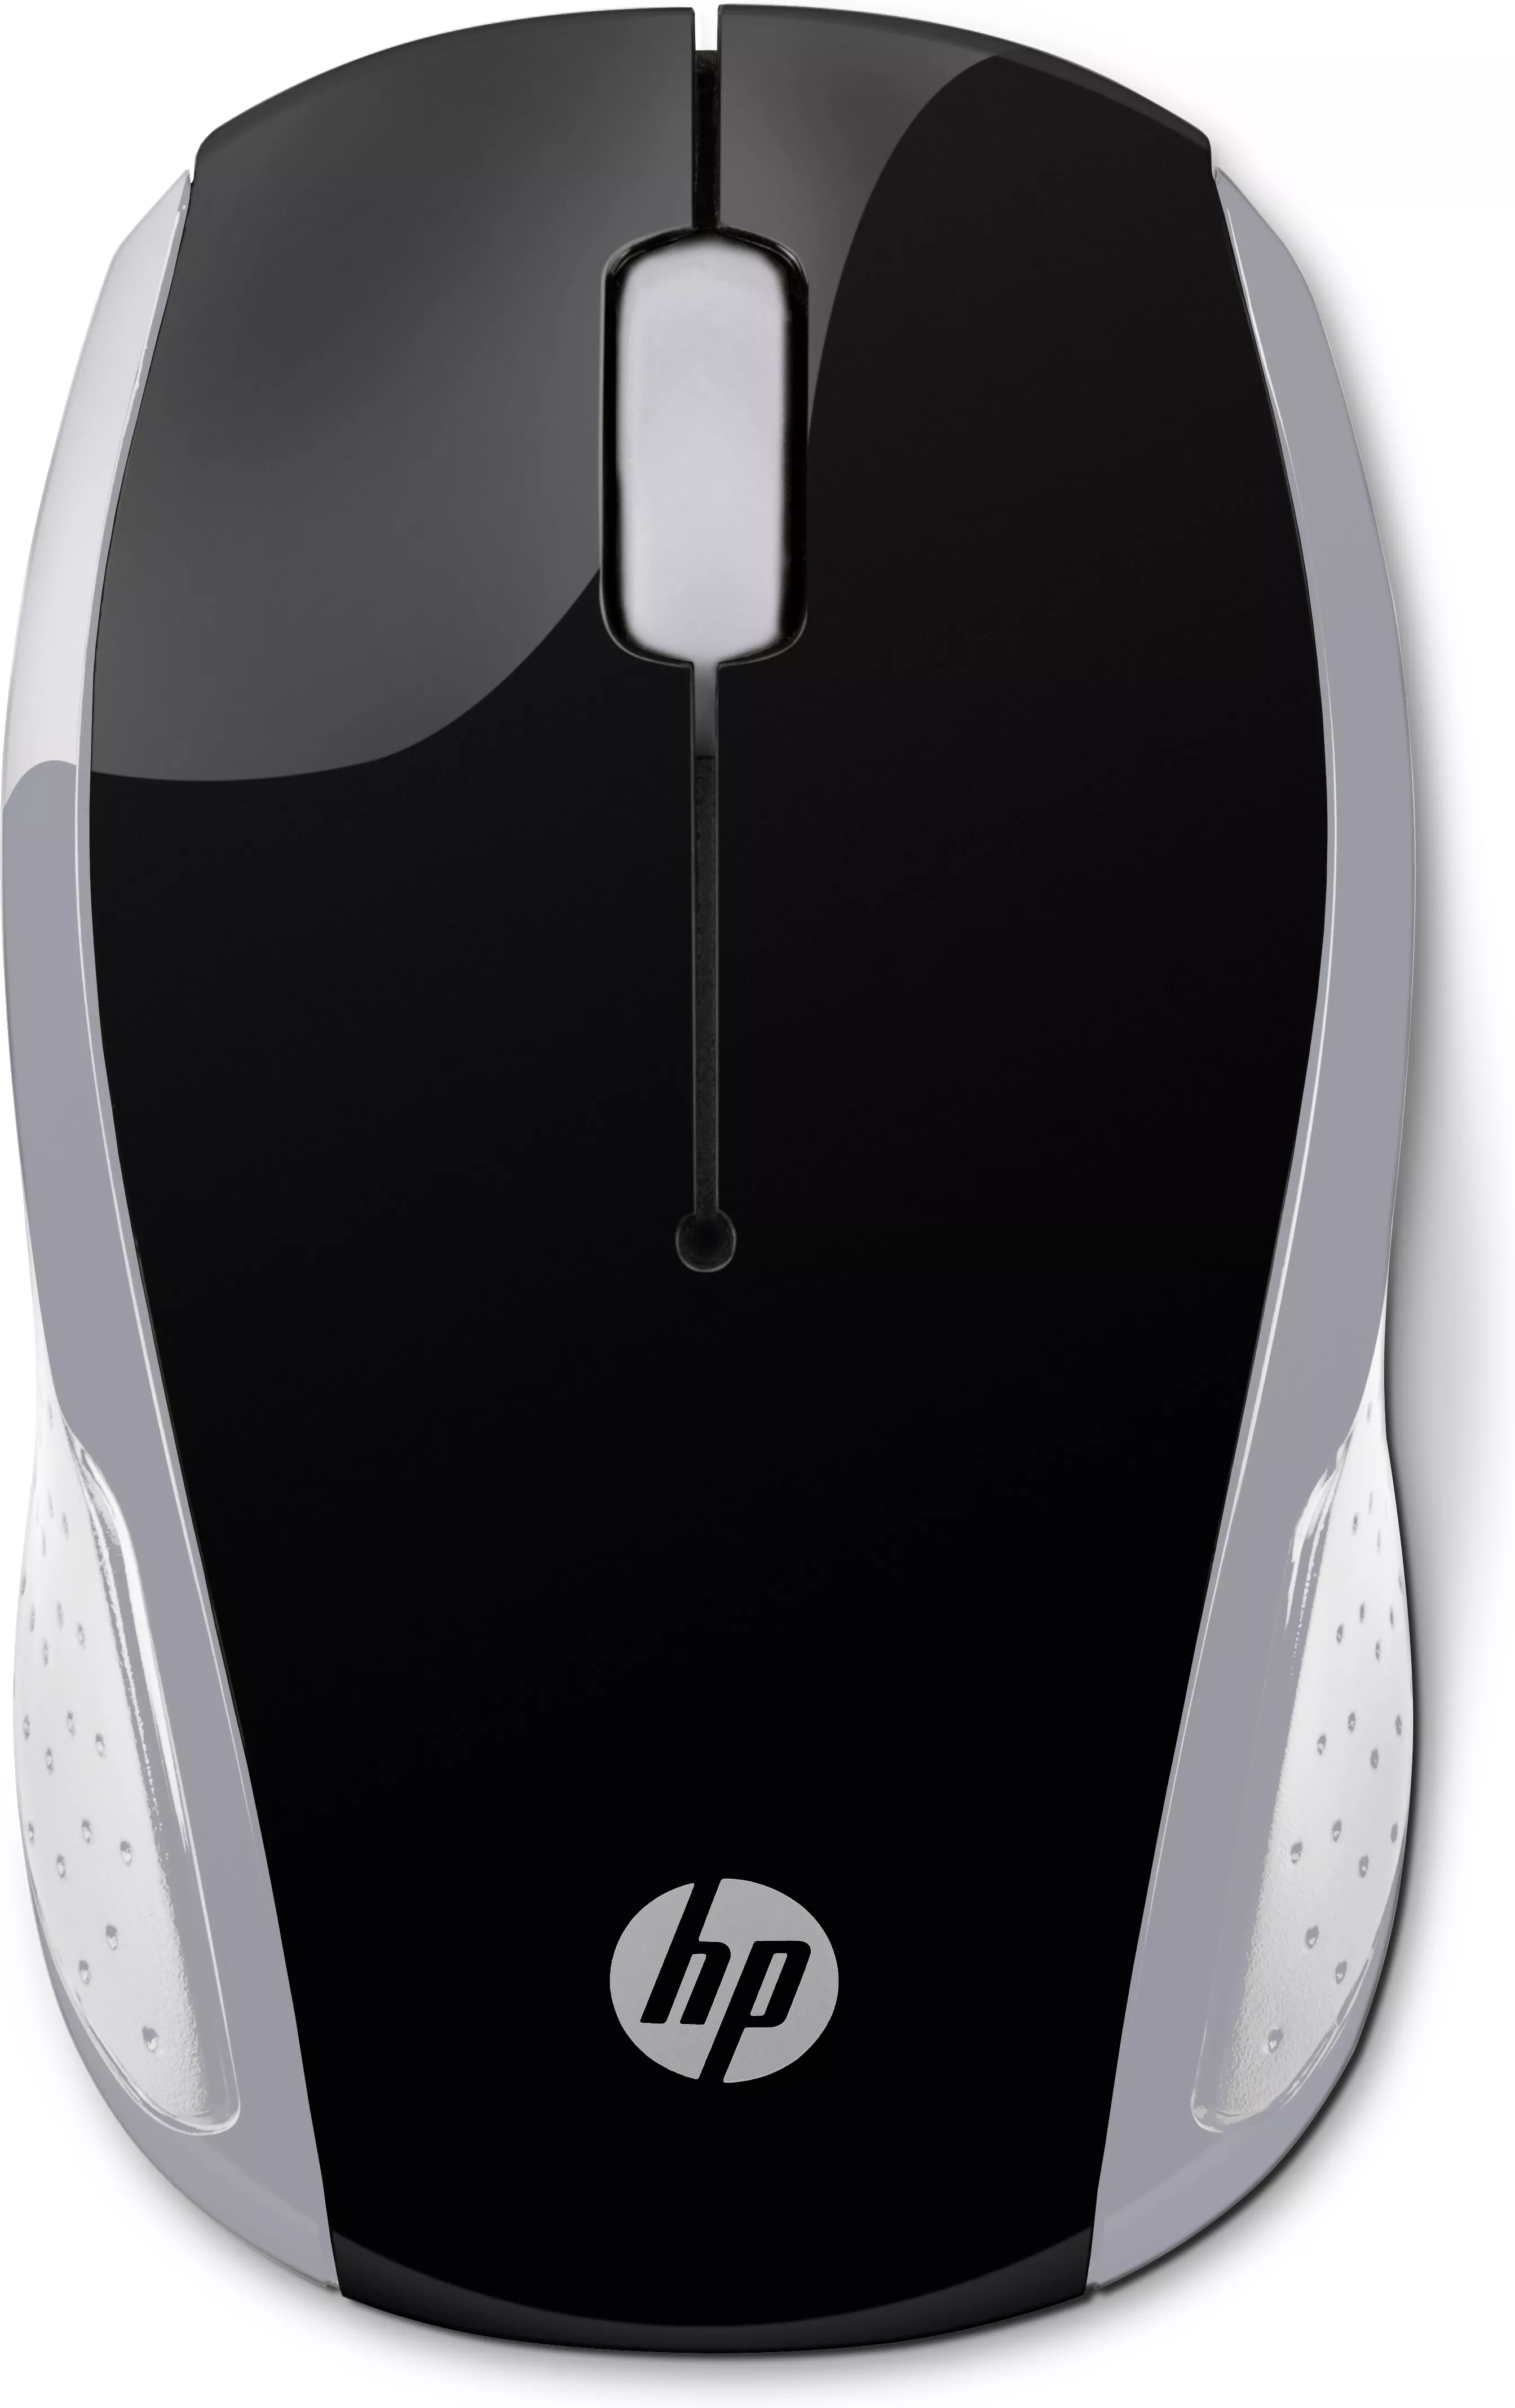 Vente HP Wireless Mouse 200 Pike Silver HP au meilleur prix - visuel 8